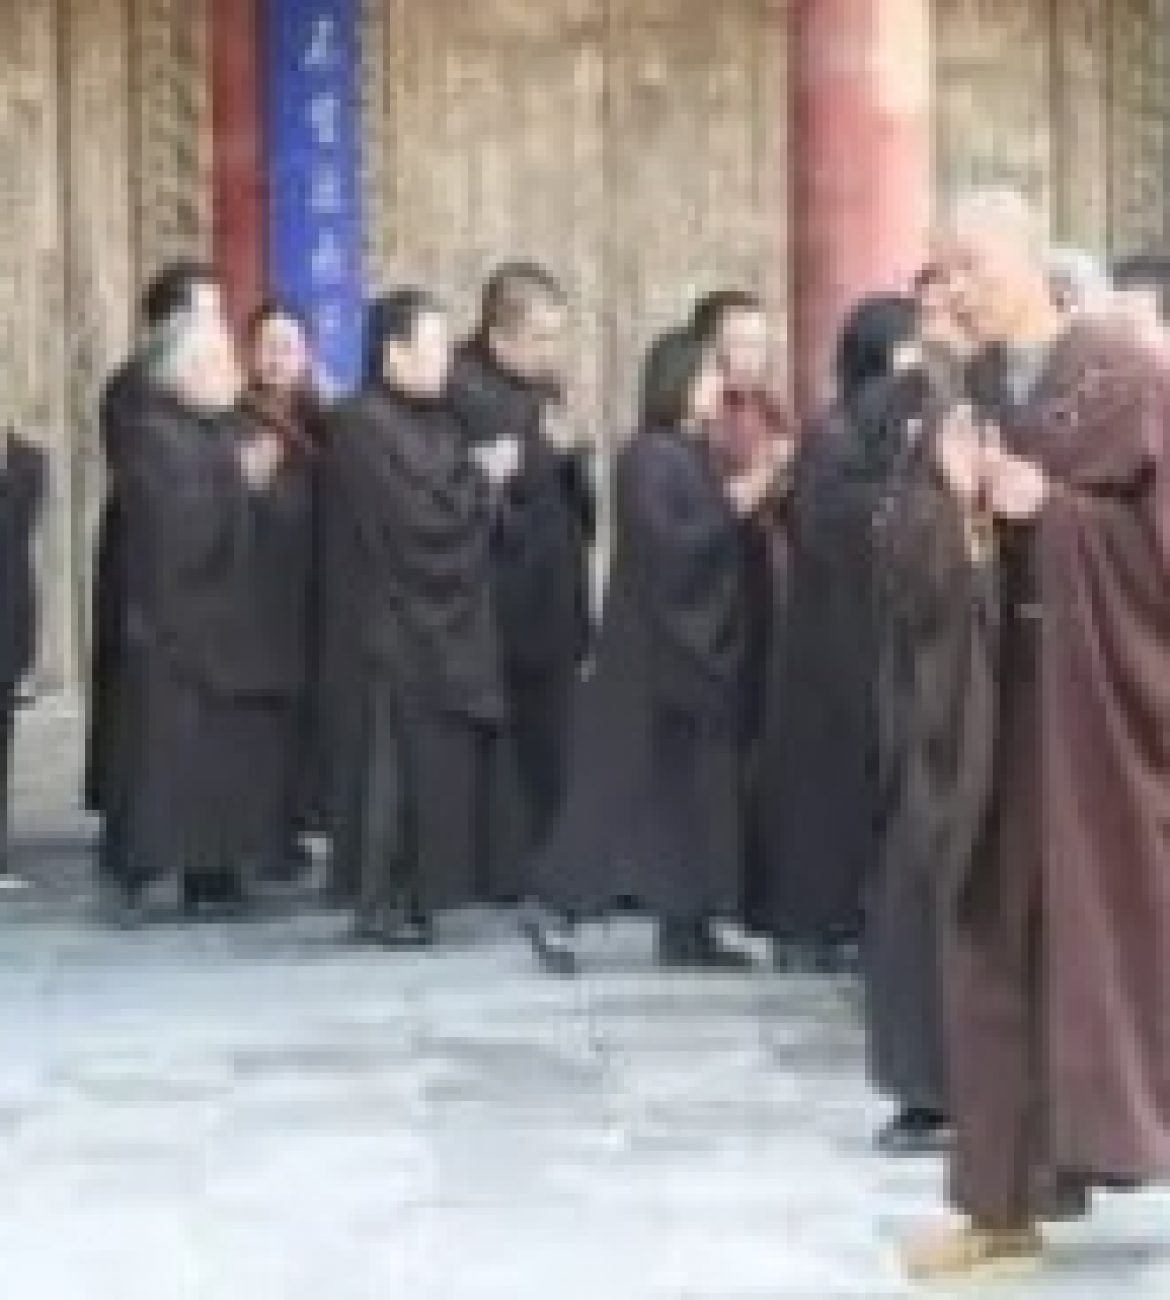 Getting Arrested in Gansu, China